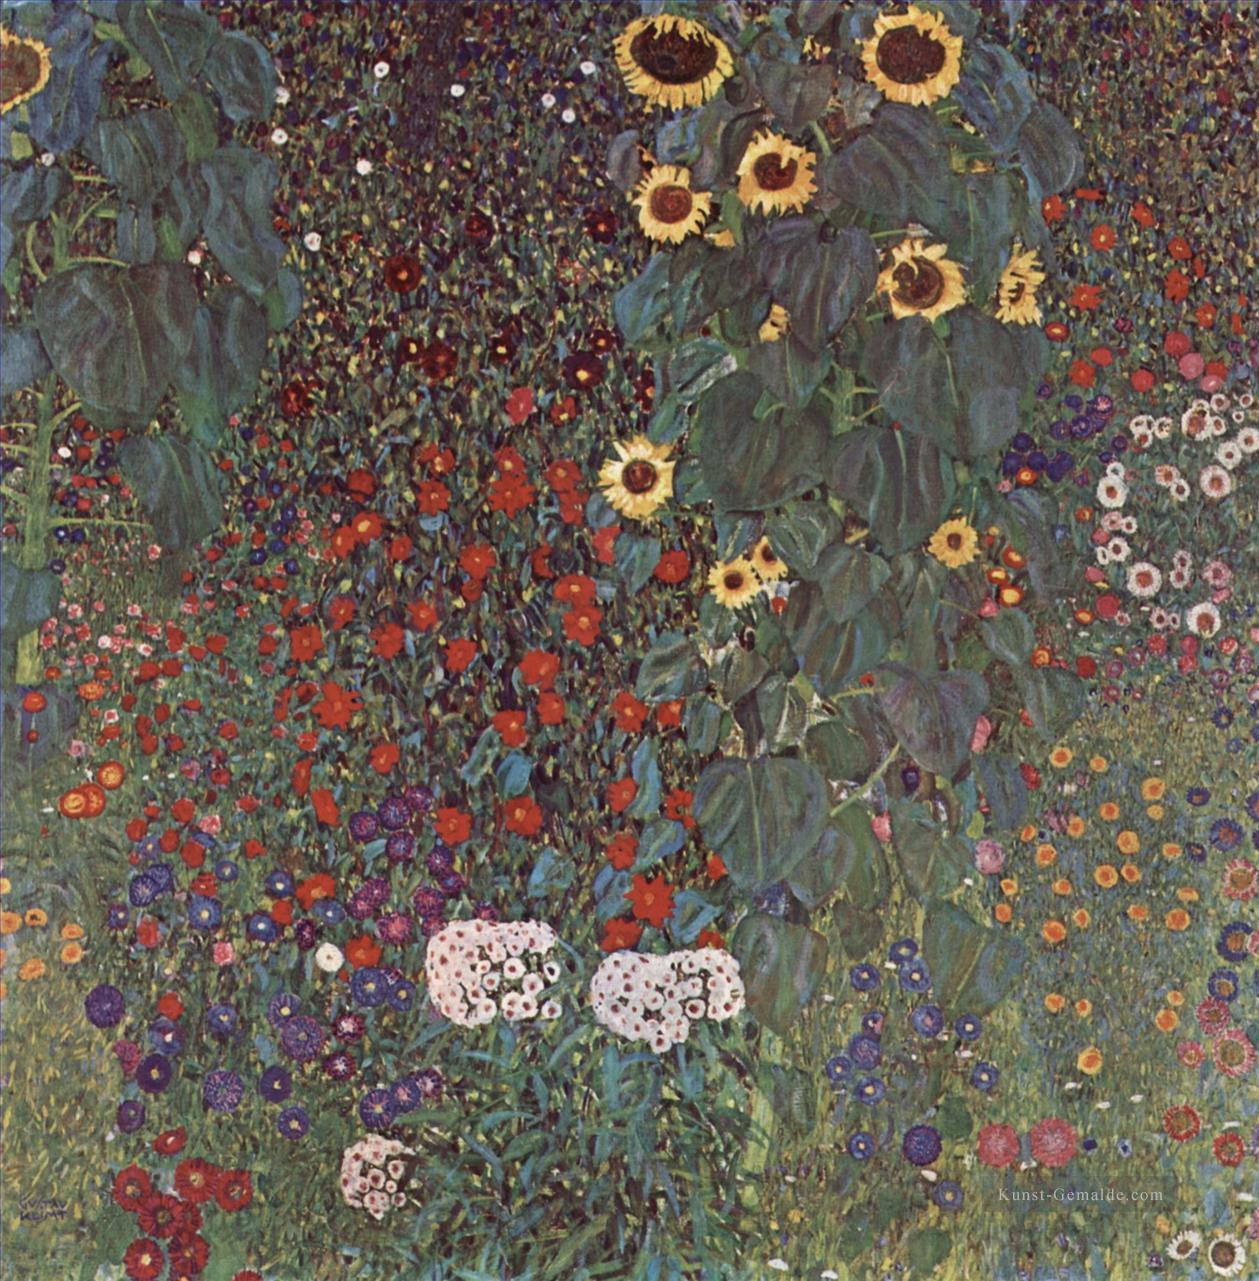 Gartenmit SonnenblumenaufdemLande Symbolik Gustav Klimt Ölgemälde